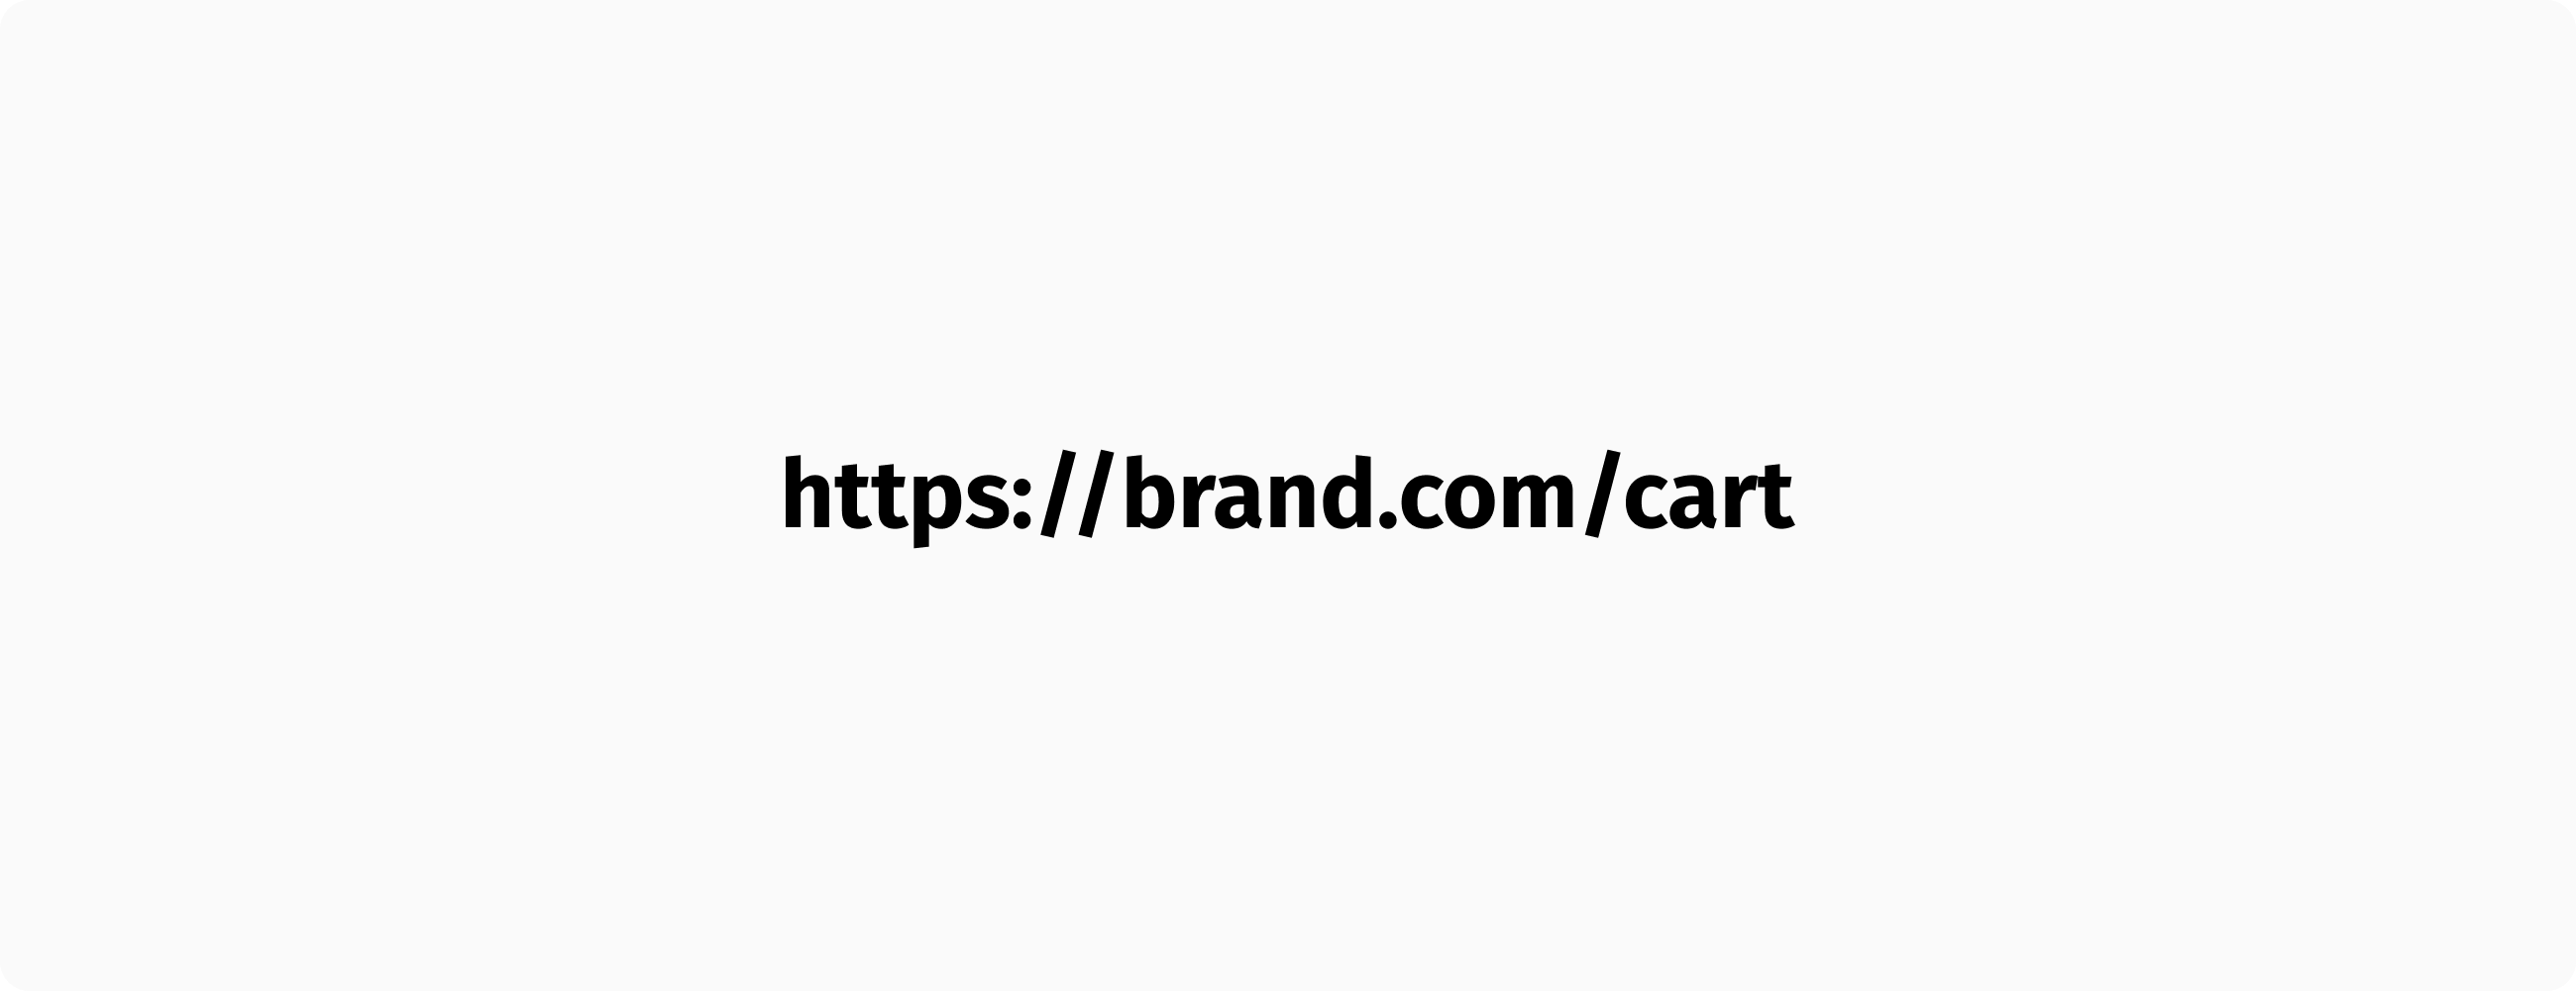 A stateful cart URL